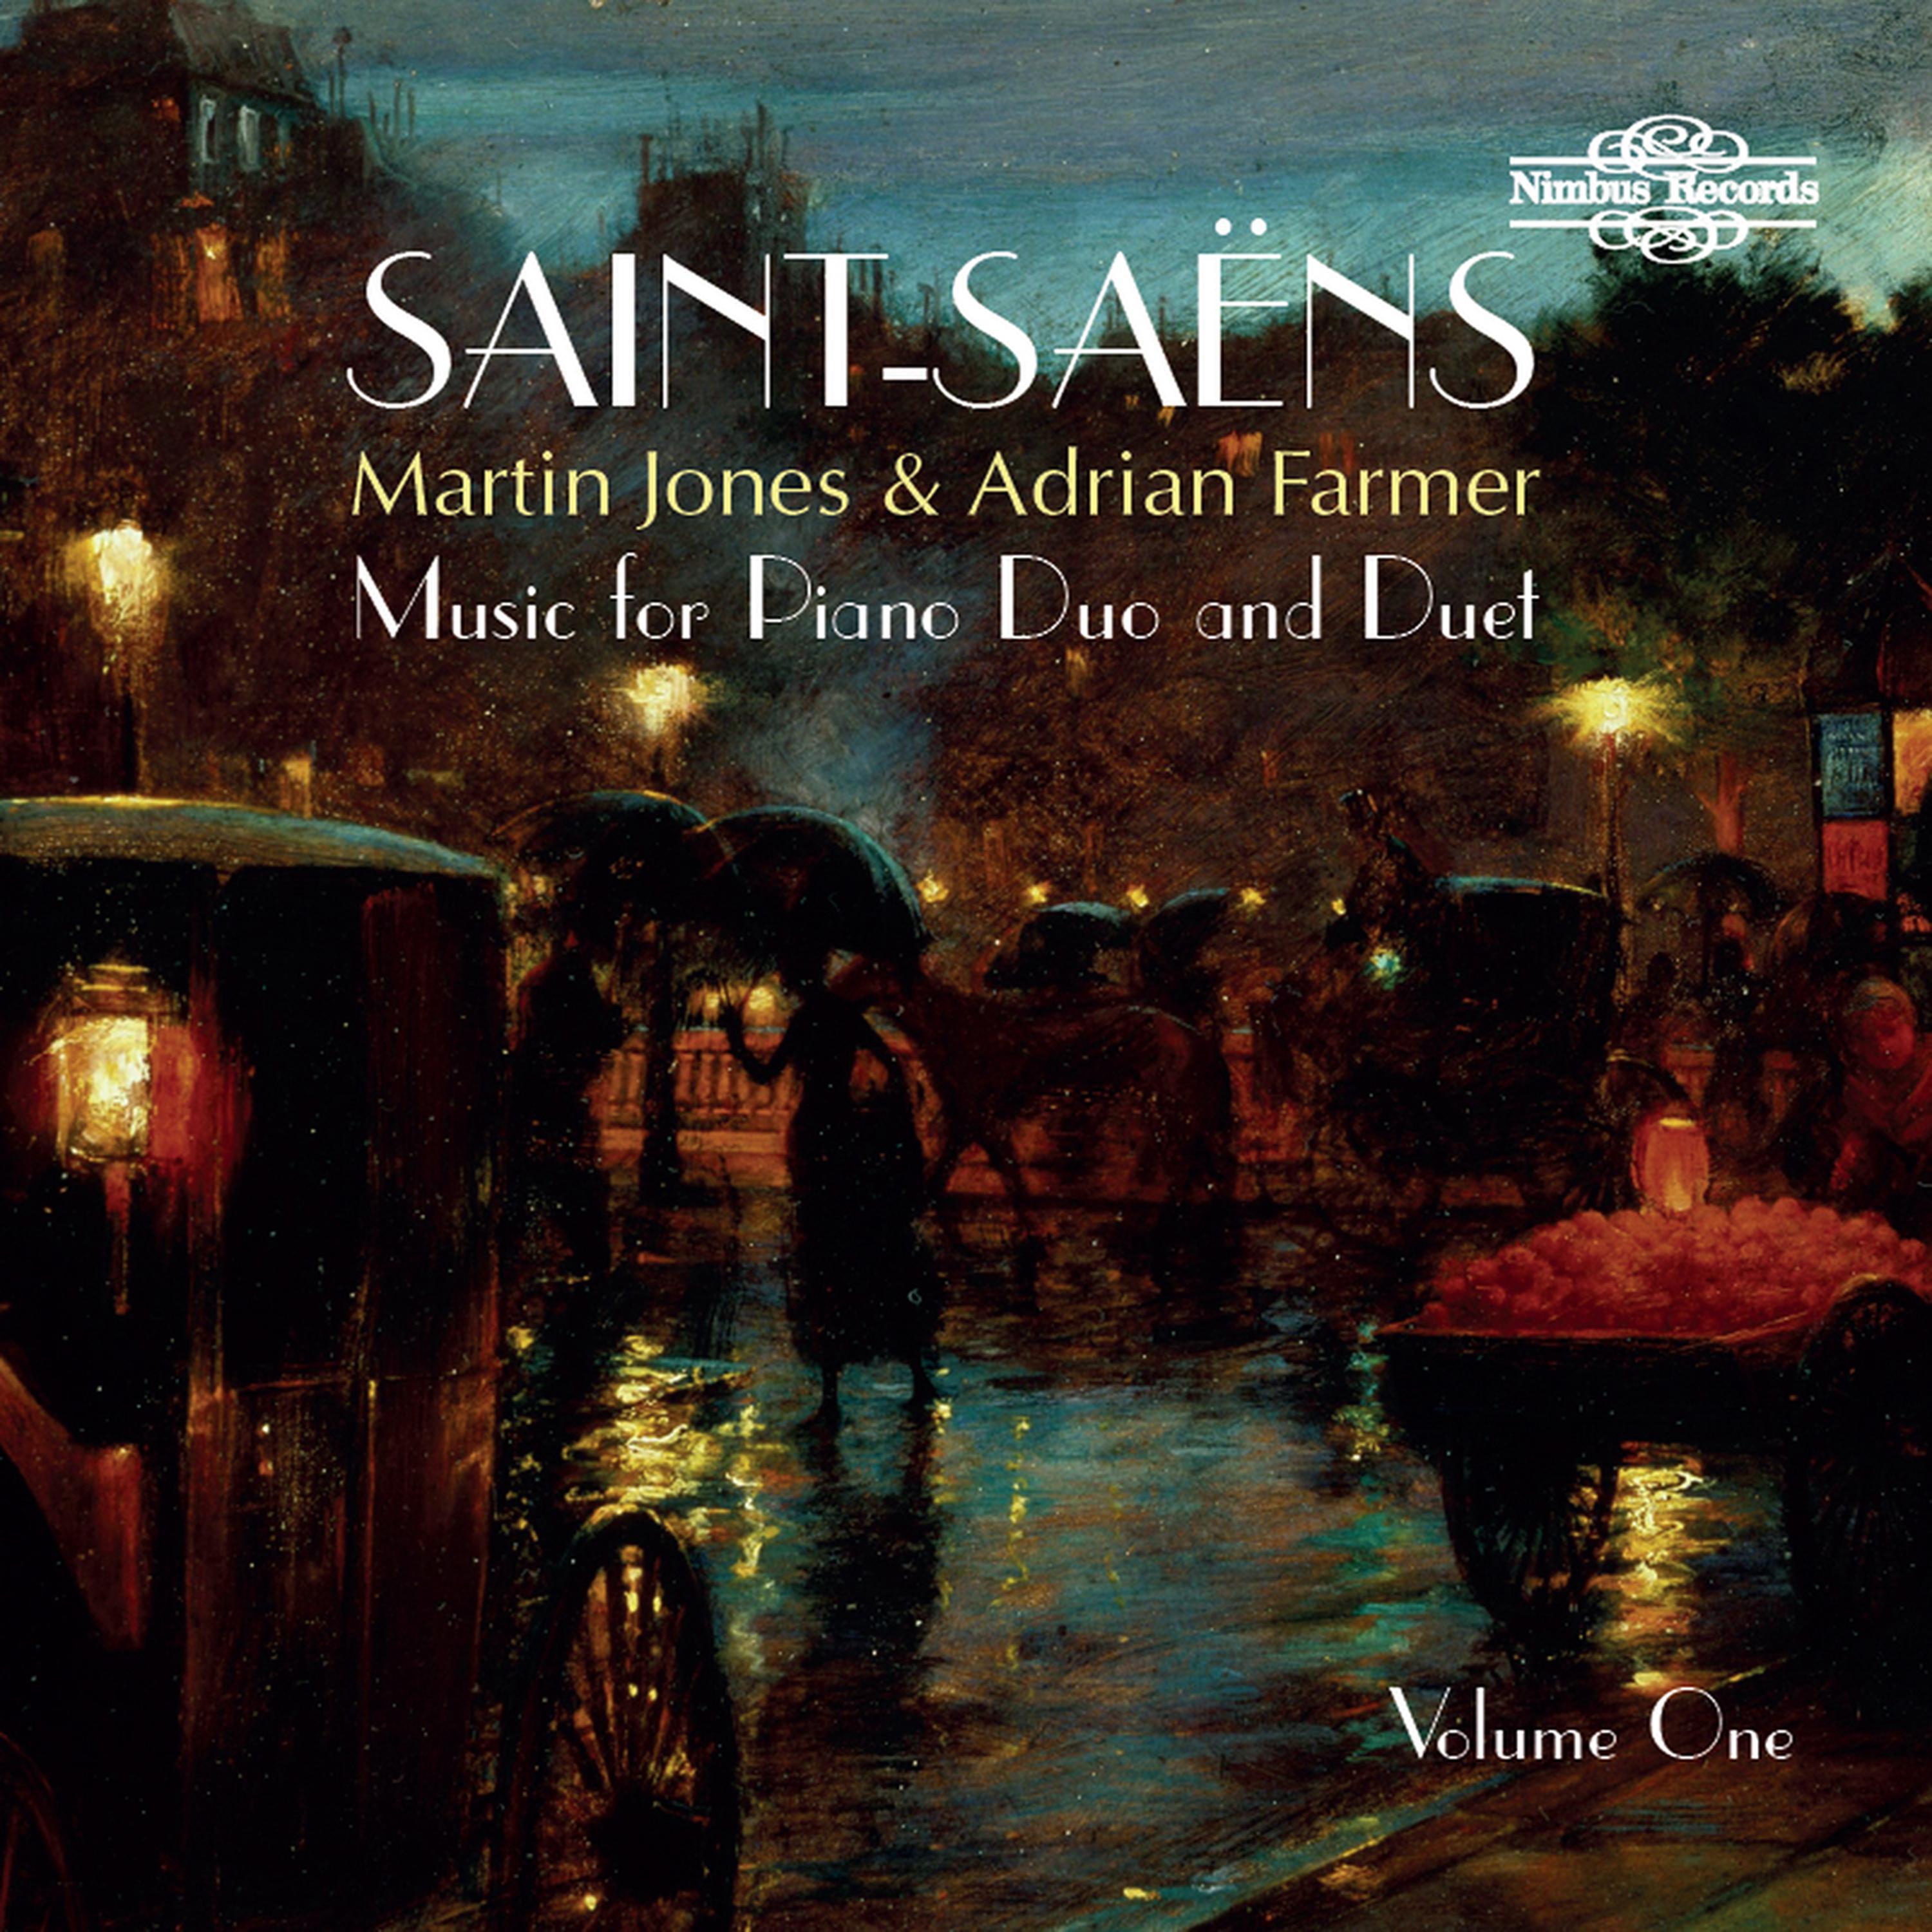 SaintSa ns: Music for Piano Duo and Duet